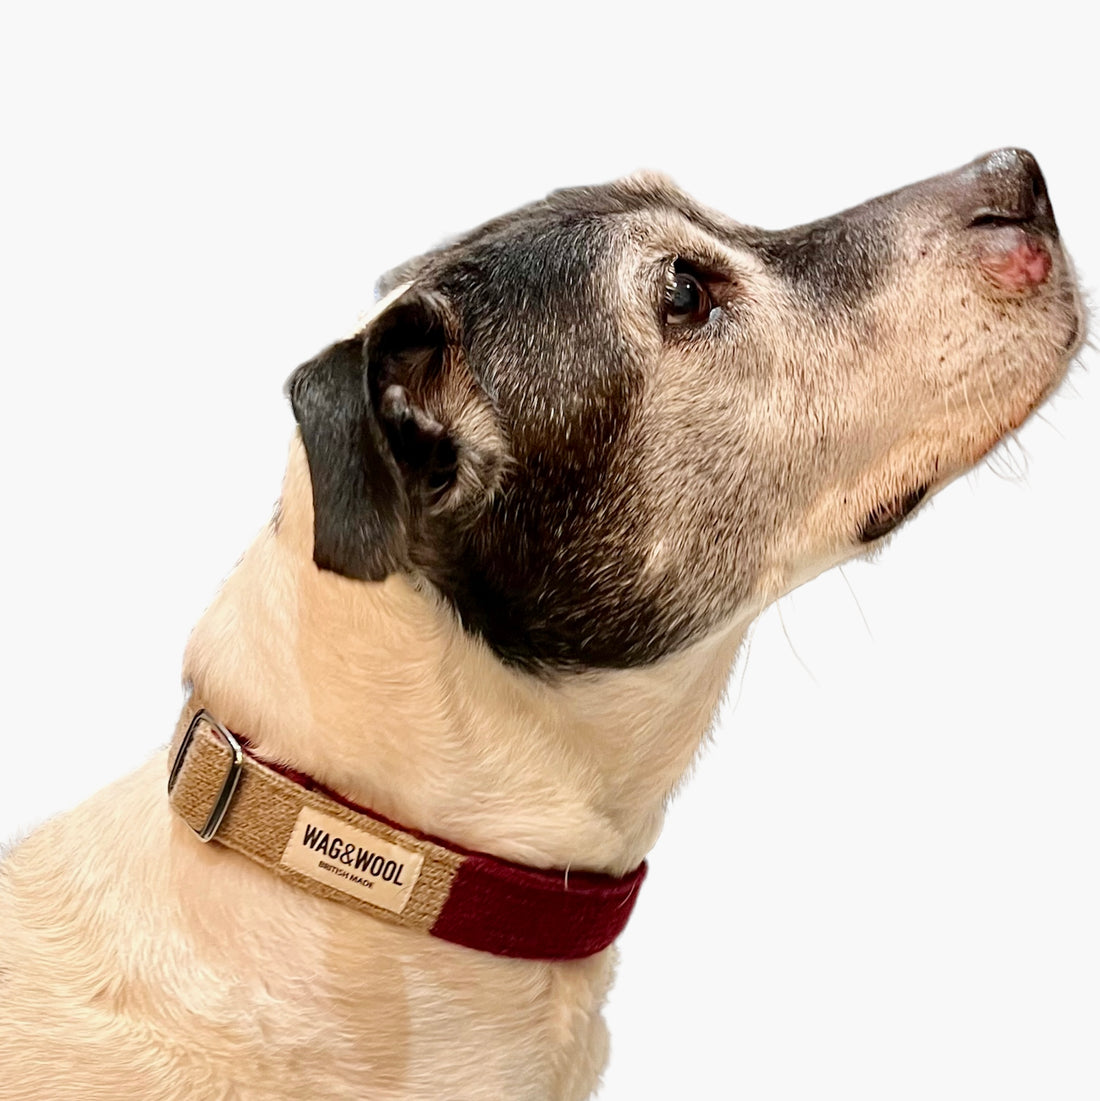 staffy in a dog collar